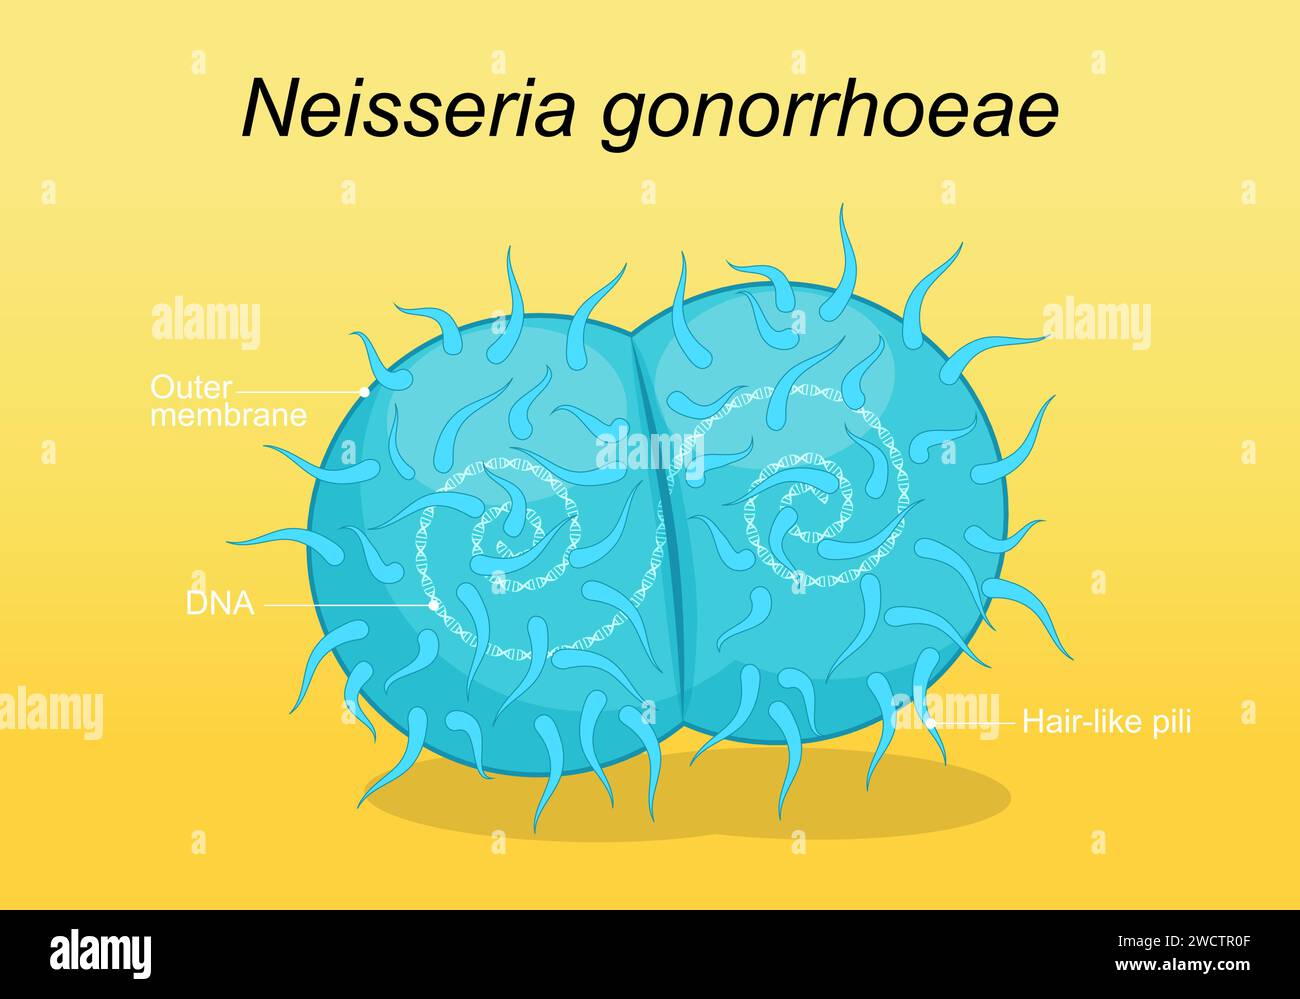 Neisseria gonorrhoeae-Erreger. Sexuell übertragbare Krankheit und Gonokokkeninfektion. Infektionen des Genitaltraktes. Vektorposter Stock Vektor